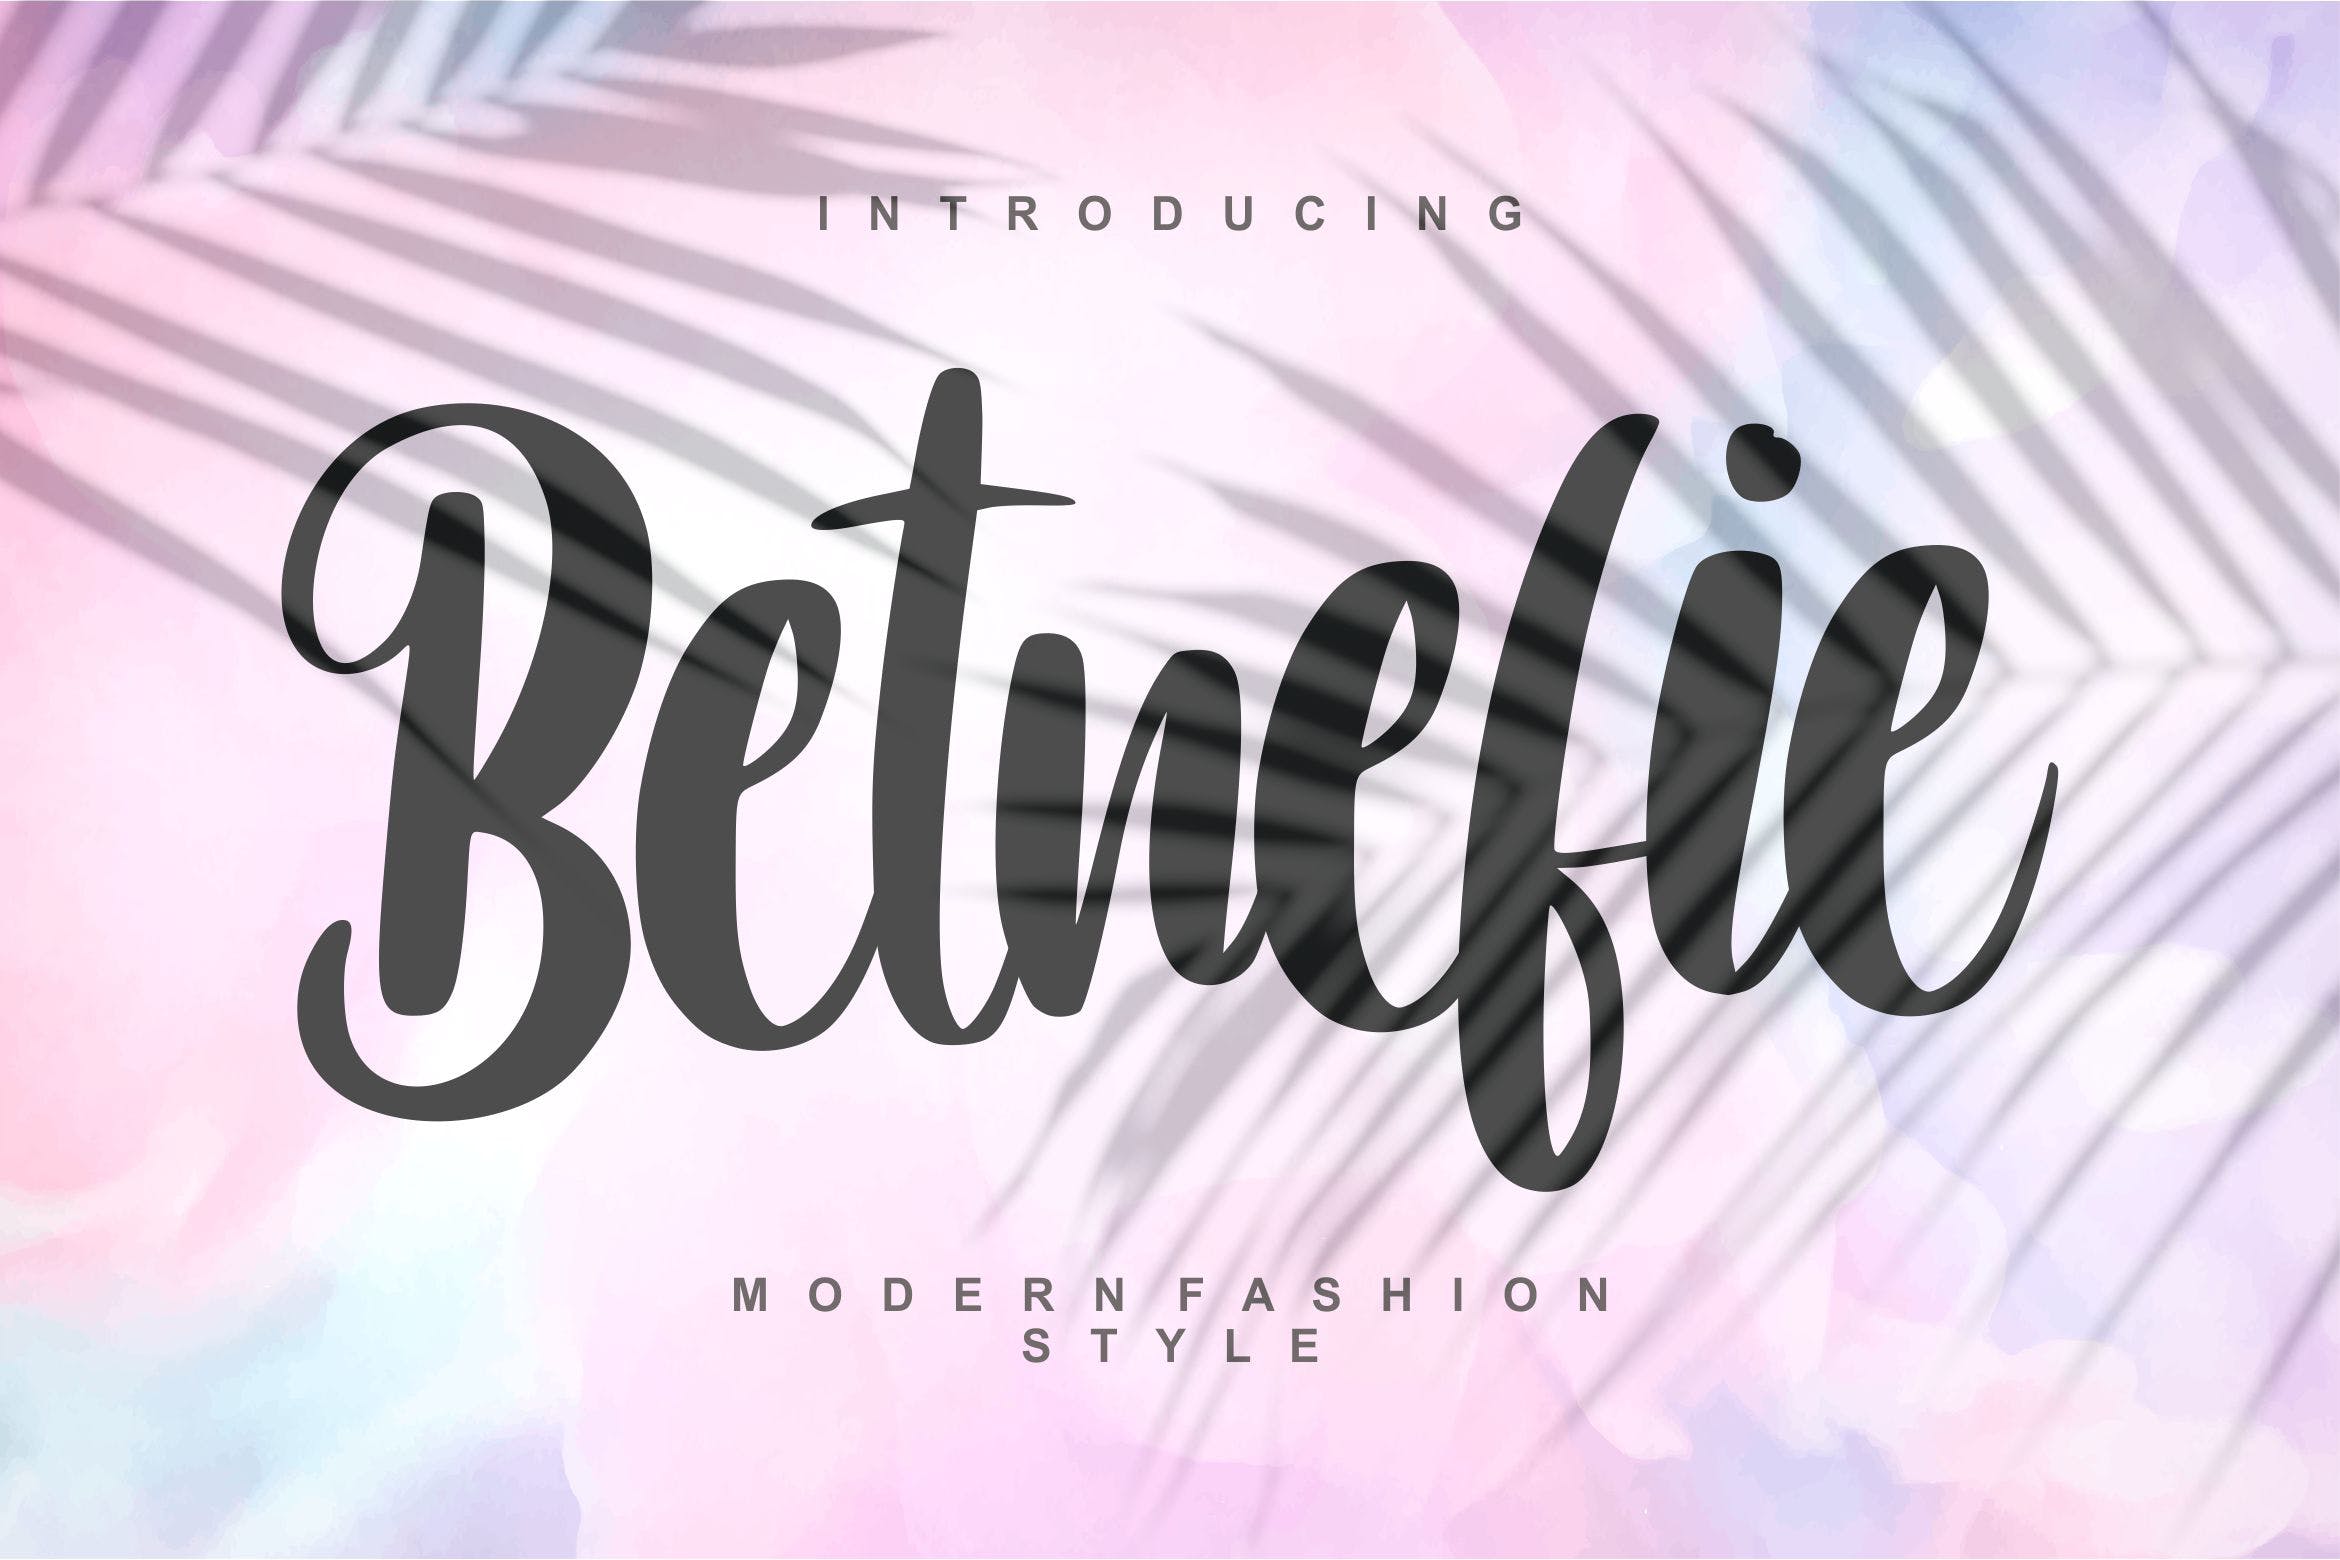 现代时尚风格英文书法字体16图库精选 Betnefie | Modern Fashion Style Font插图